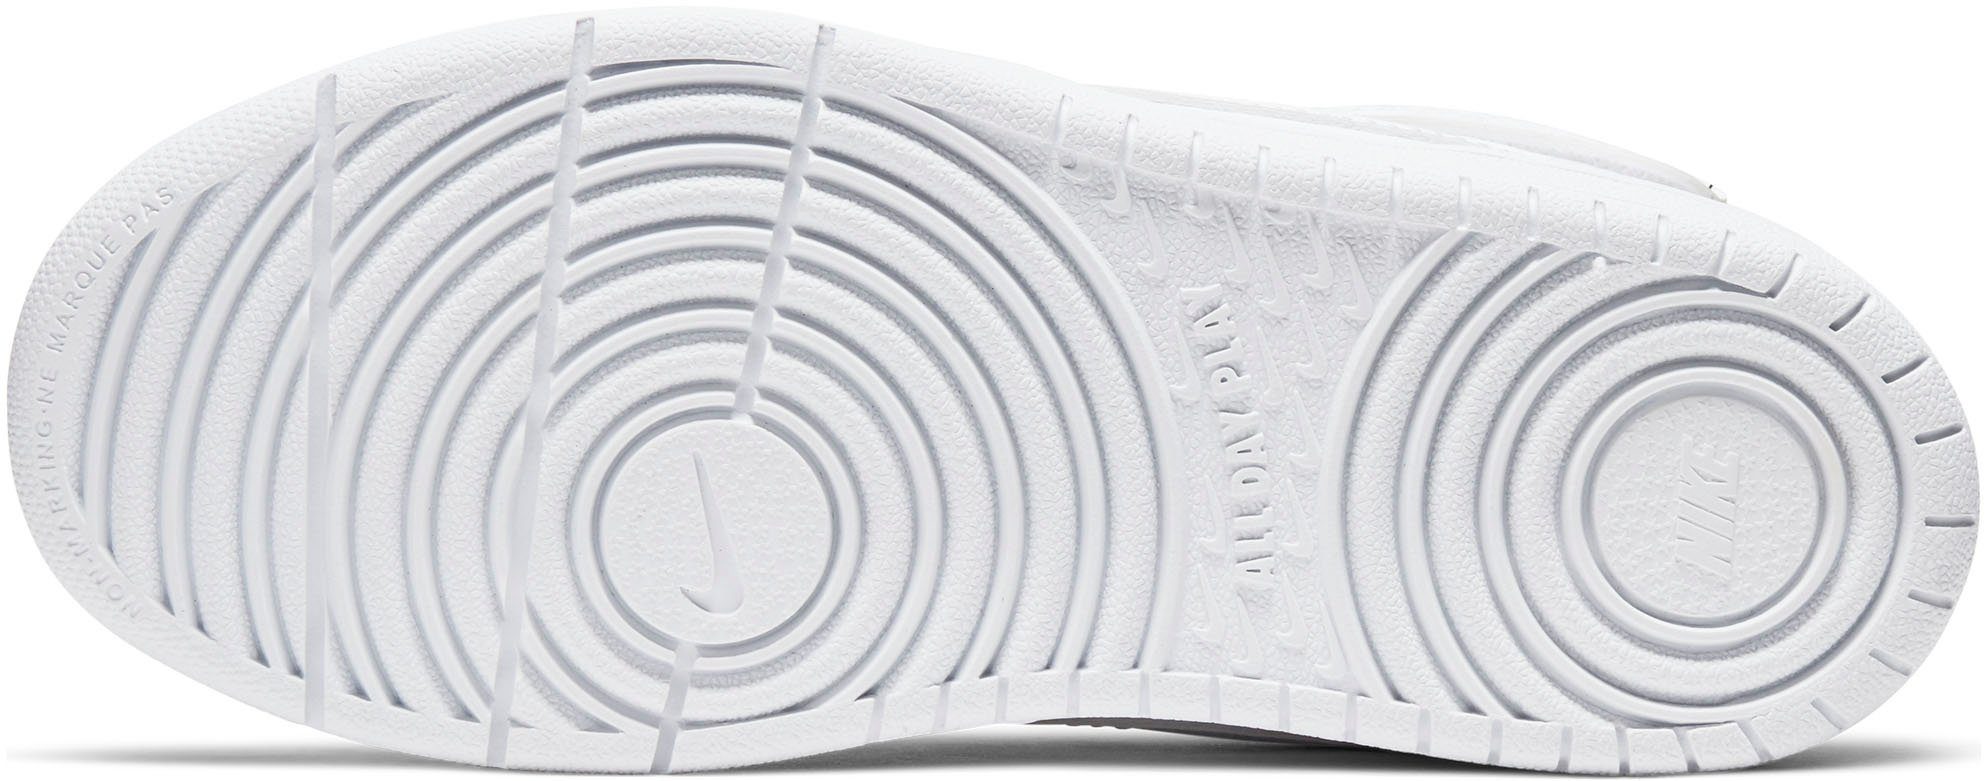 Force Spuren Nike Sportswear 1 des Design 2 Sneaker auf Air BOROUGH den COURT MID